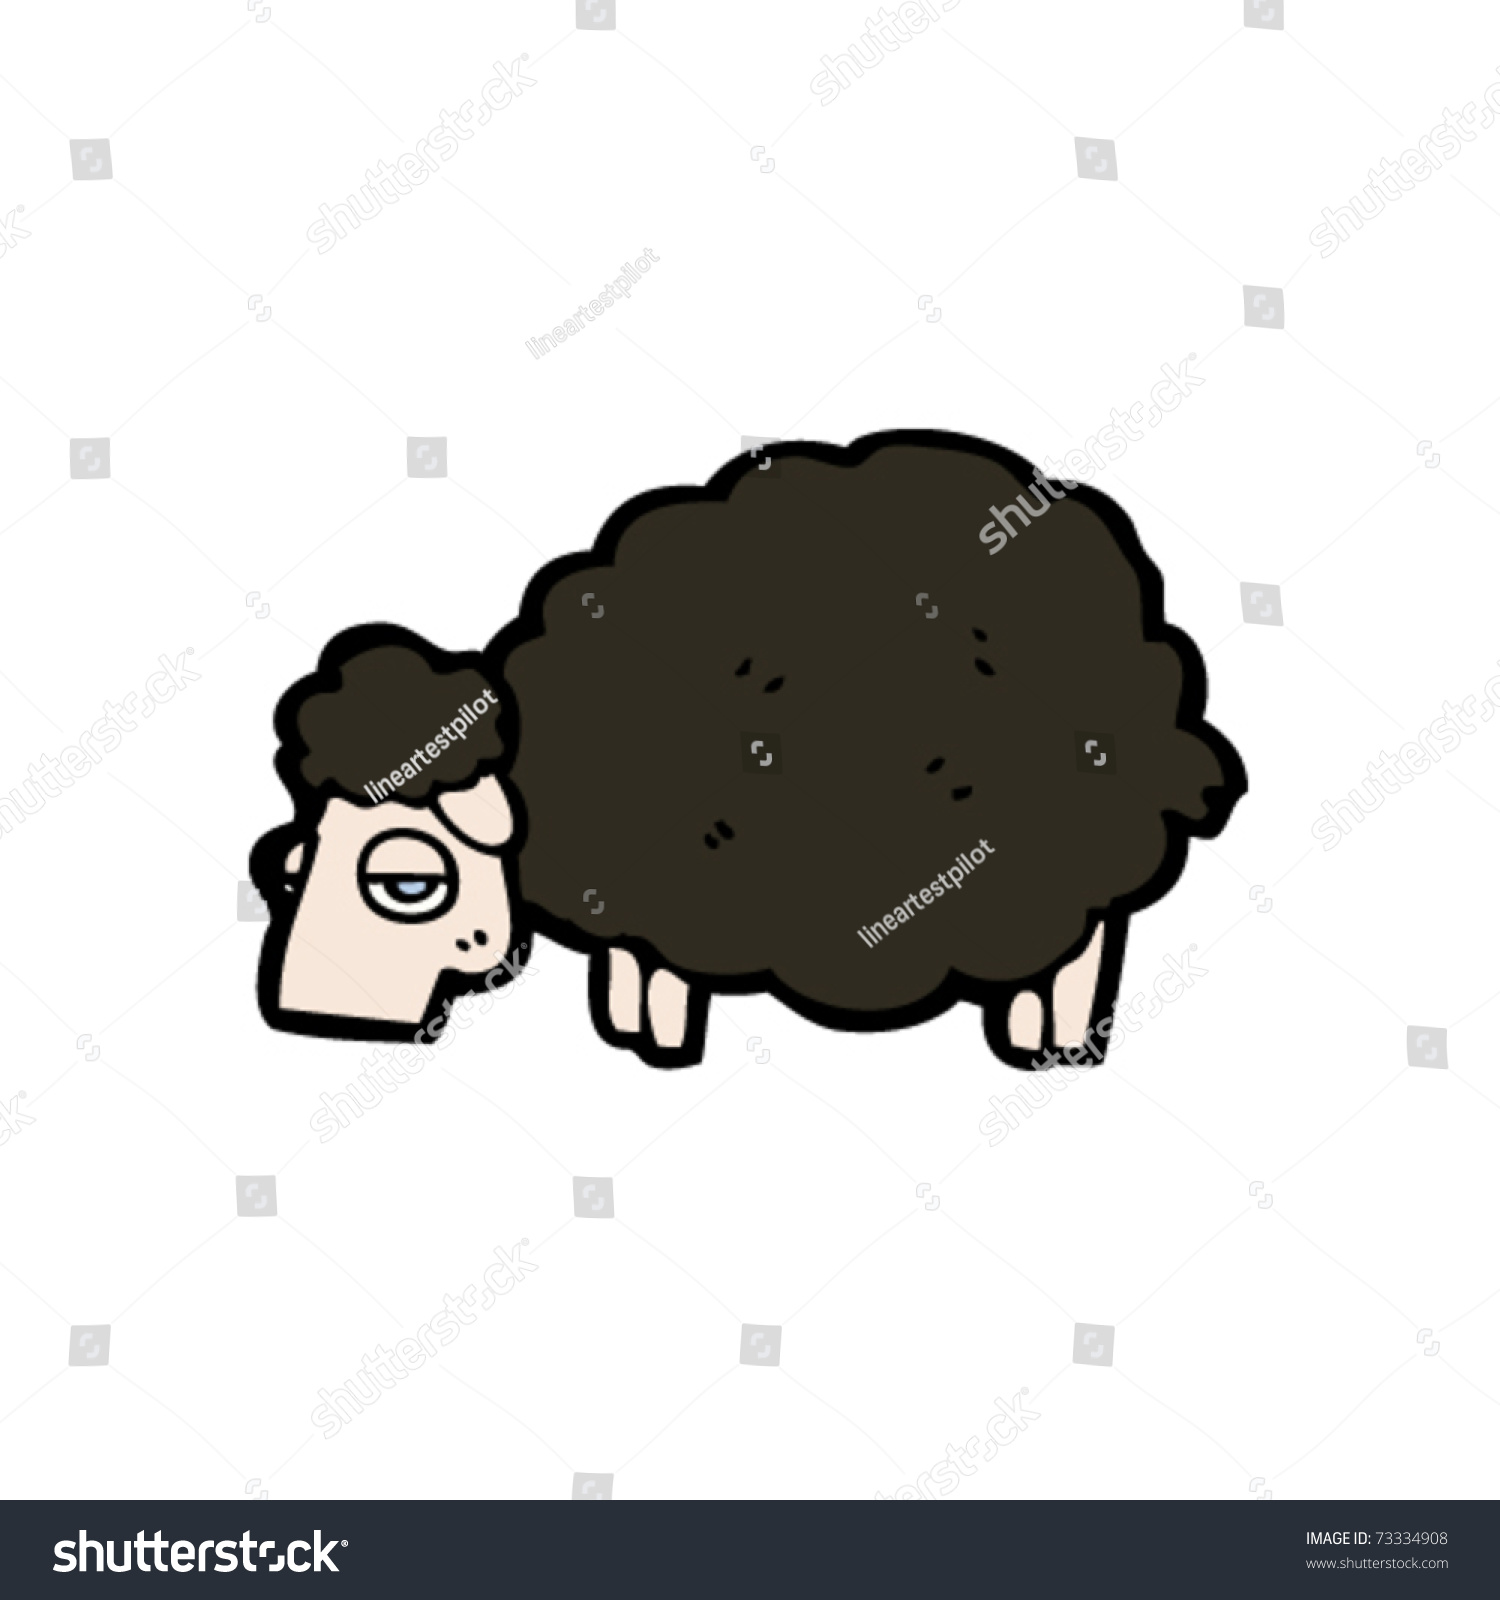 Black Sheep Cartoon Stock Vector Illustration 73334908 : Shutterstock